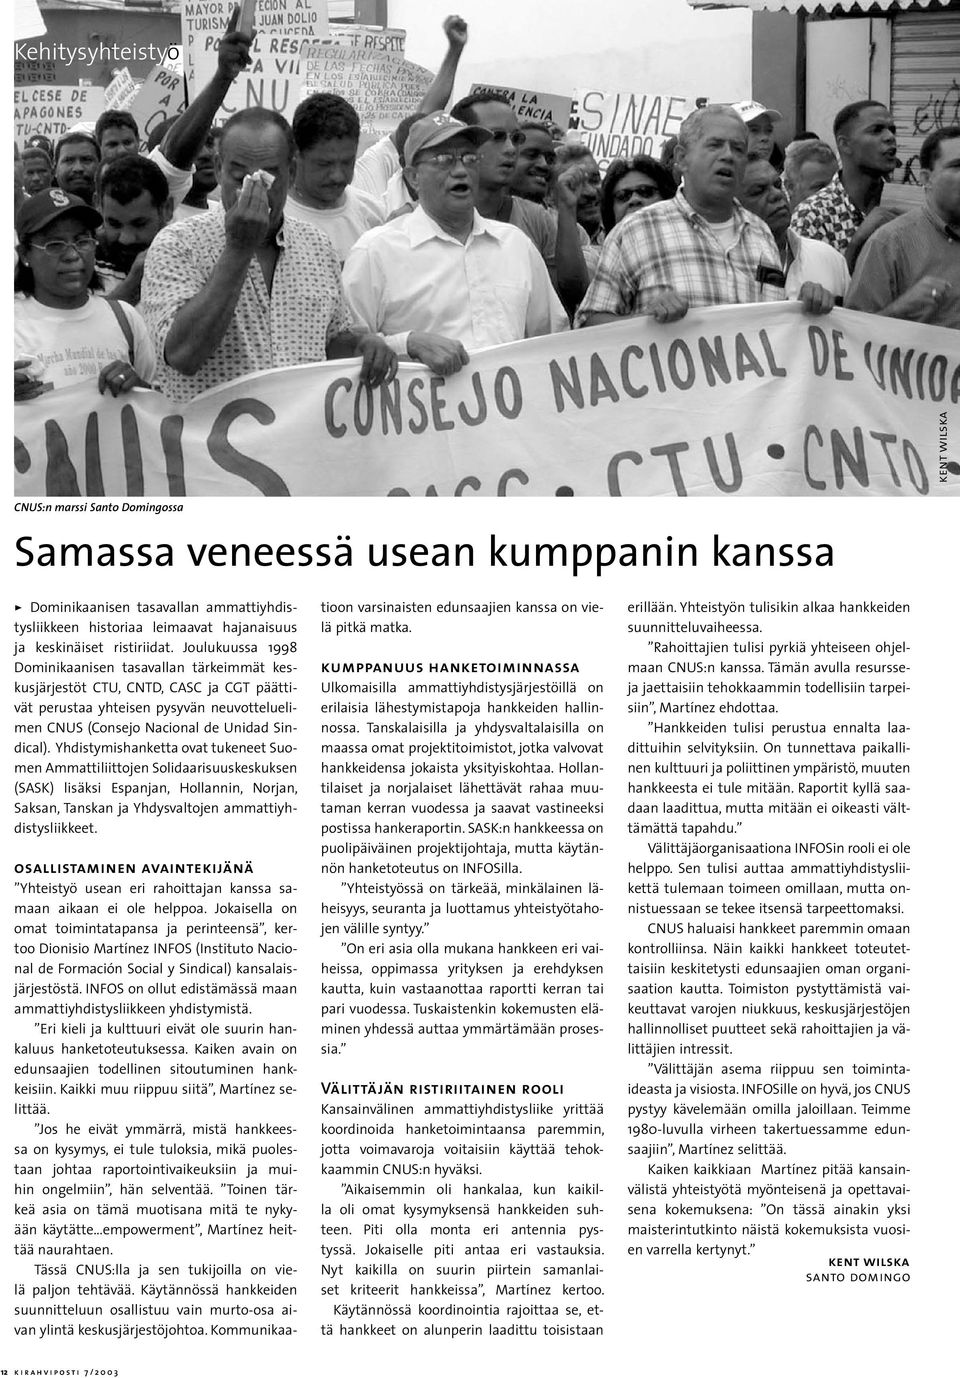 Joulukuussa 1998 Dominikaanisen tasavallan tärkeimmät keskusjärjestöt CTU, CNTD, CASC ja CGT päättivät perustaa yhteisen pysyvän neuvotteluelimen CNUS (Consejo Nacional de Unidad Sindical).